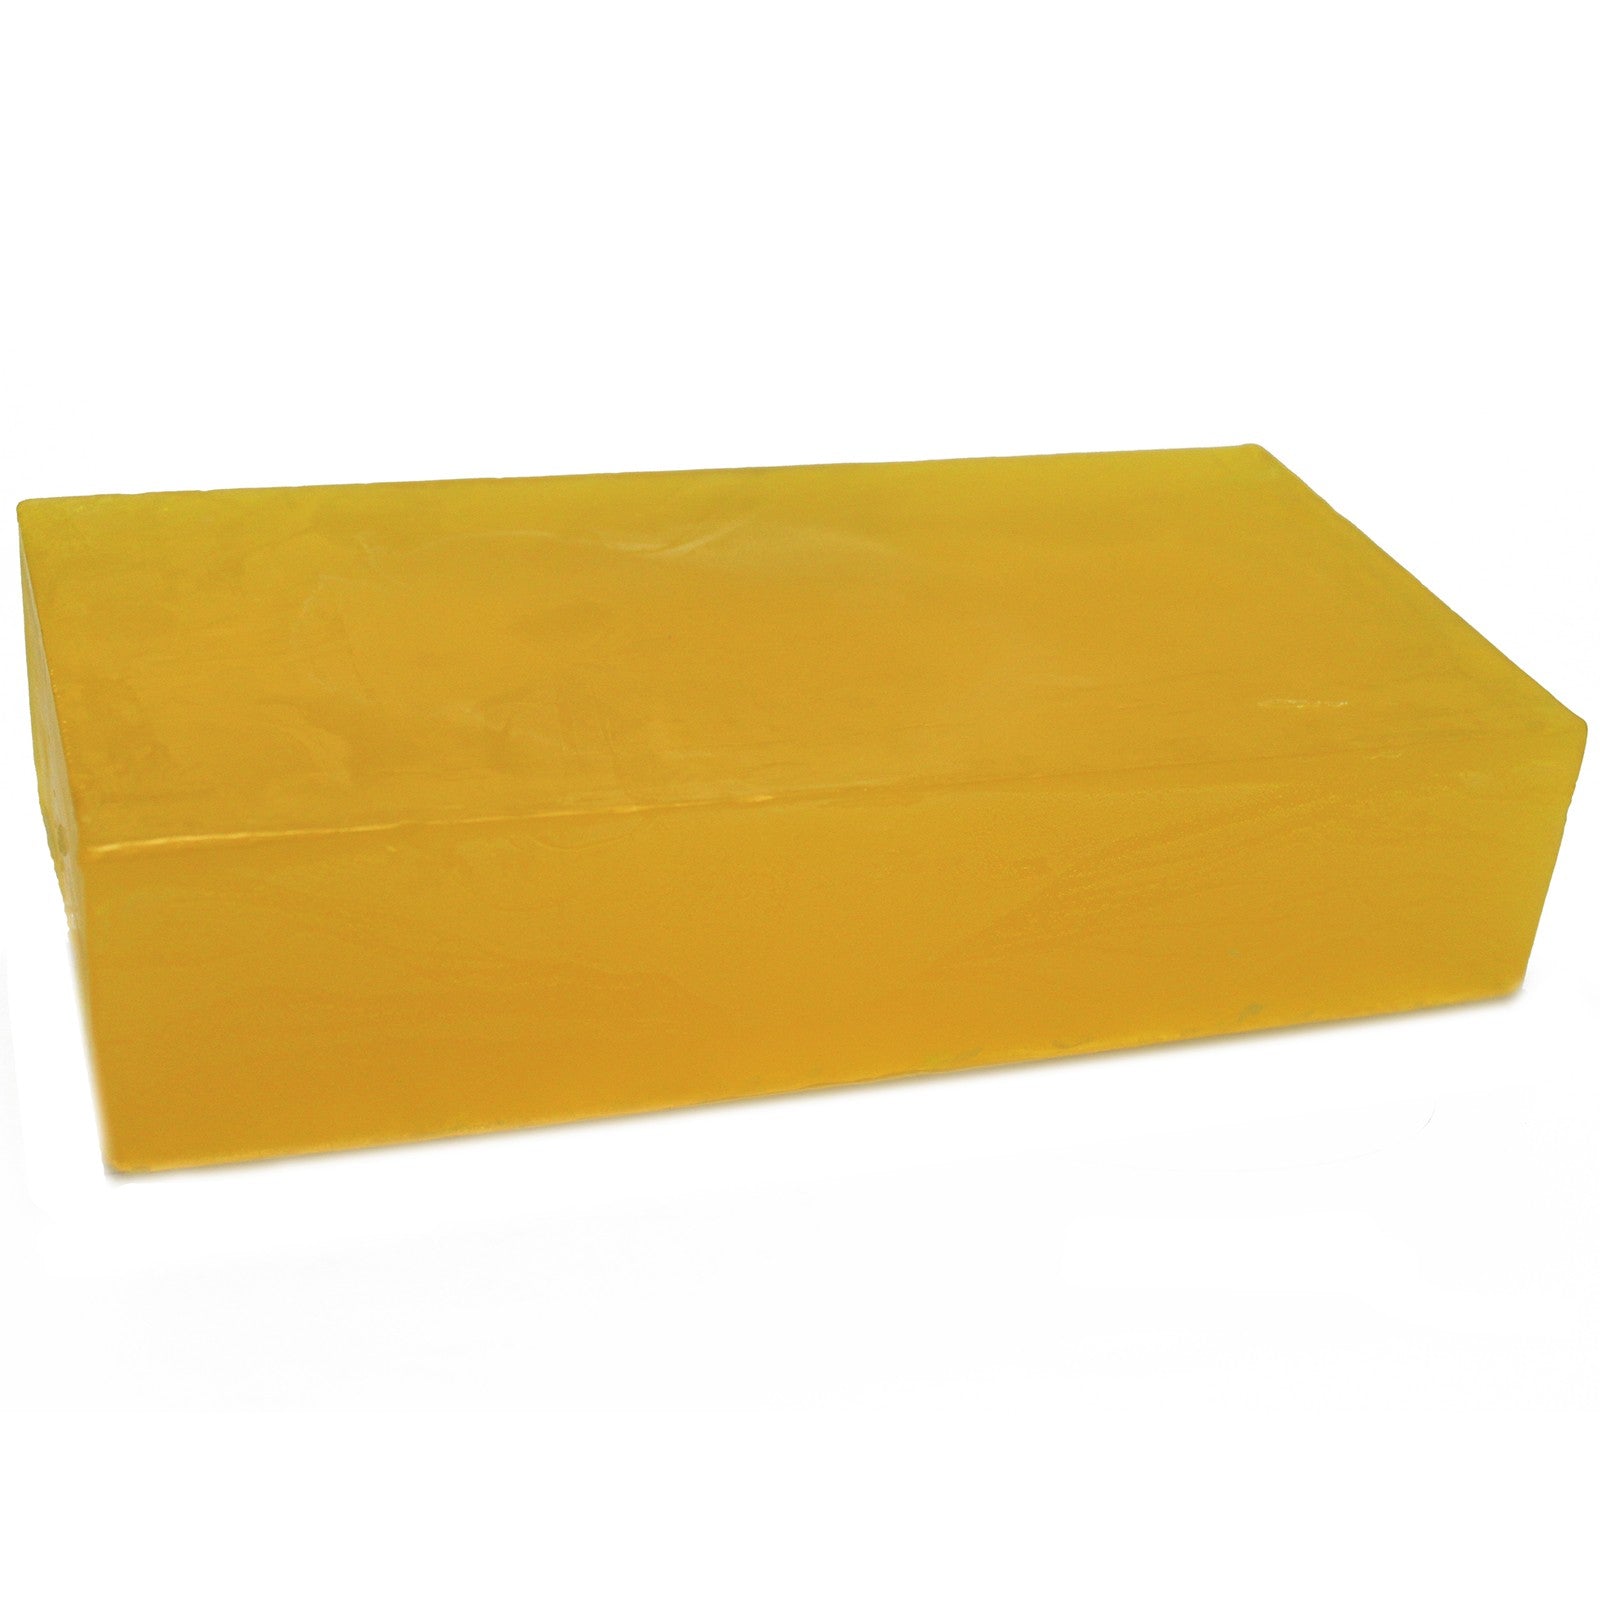 View Lemon Essential Oil Soap Loaf 2kg information